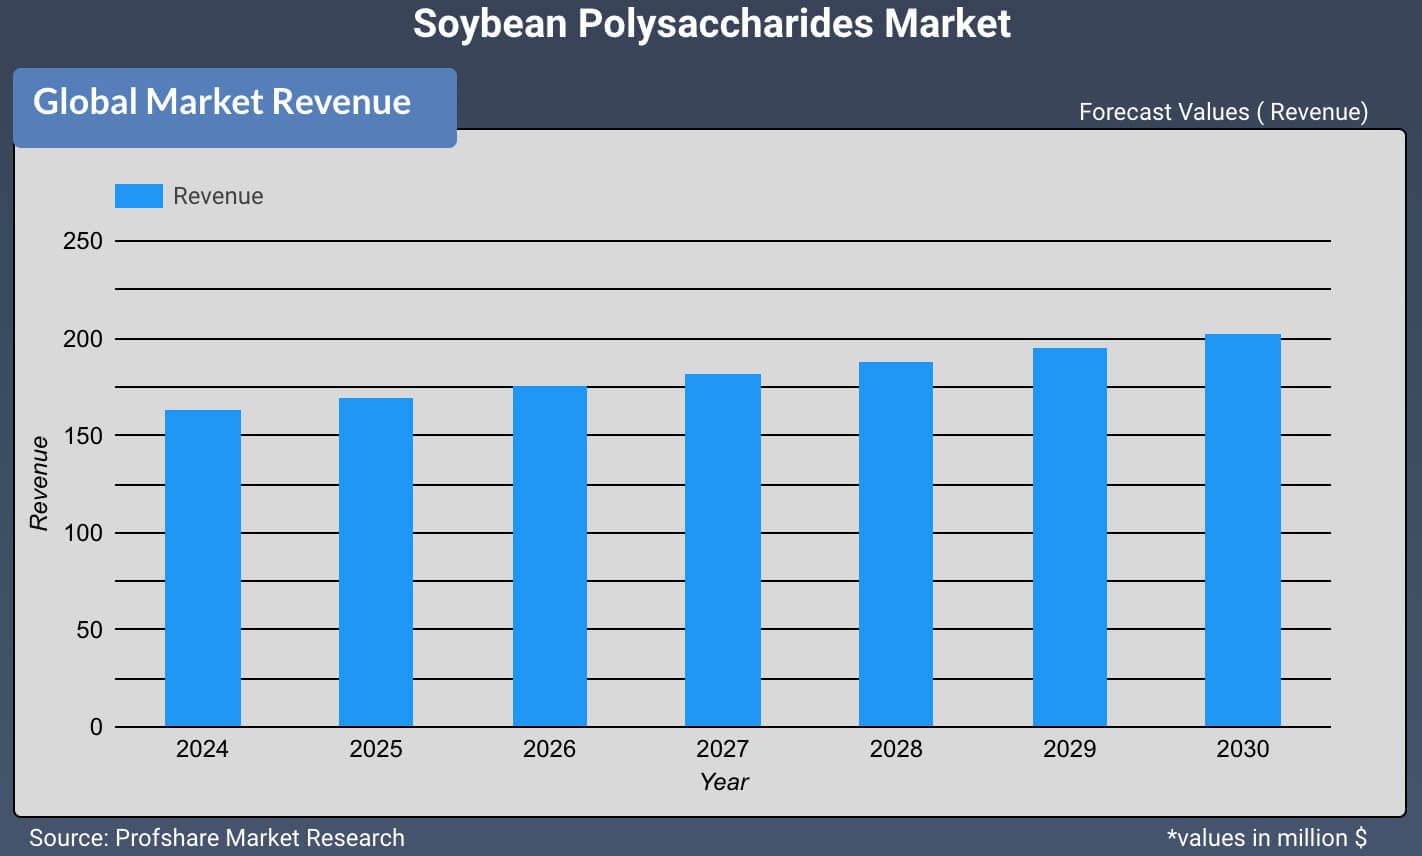 Soybean Polysaccharides Market 